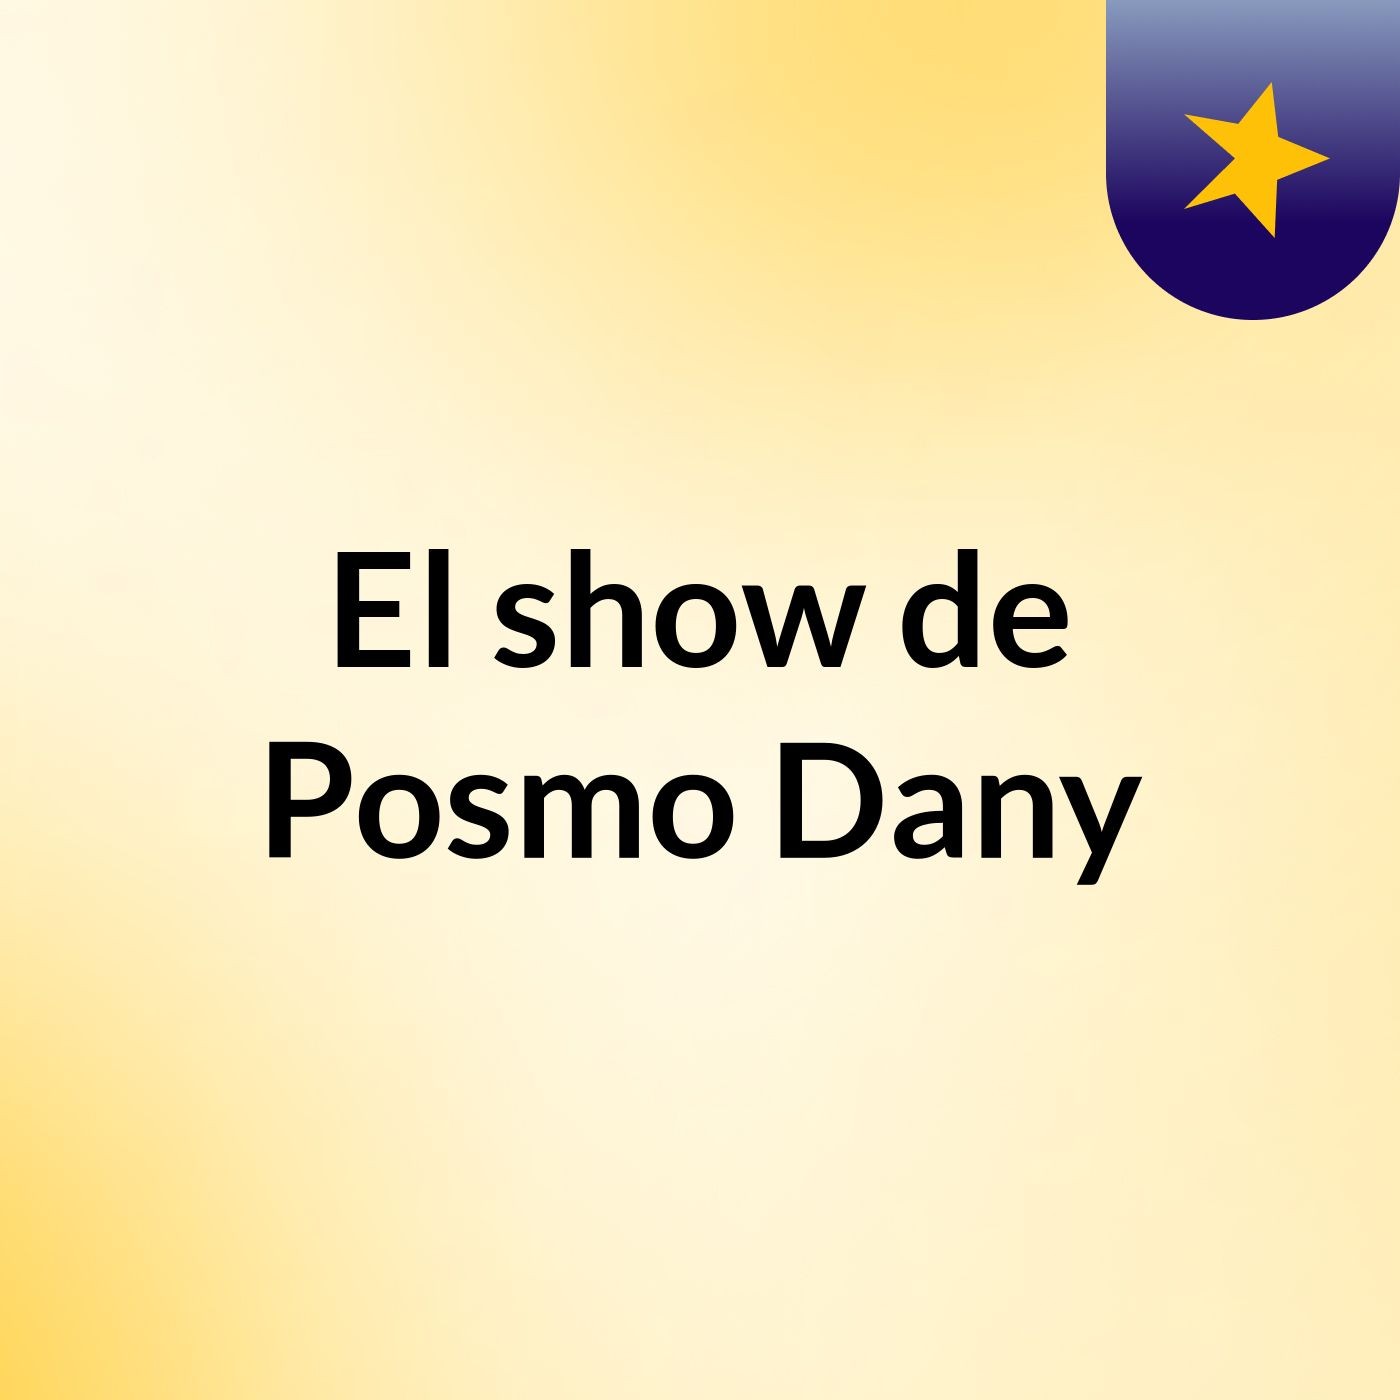 El show de Posmo Dany